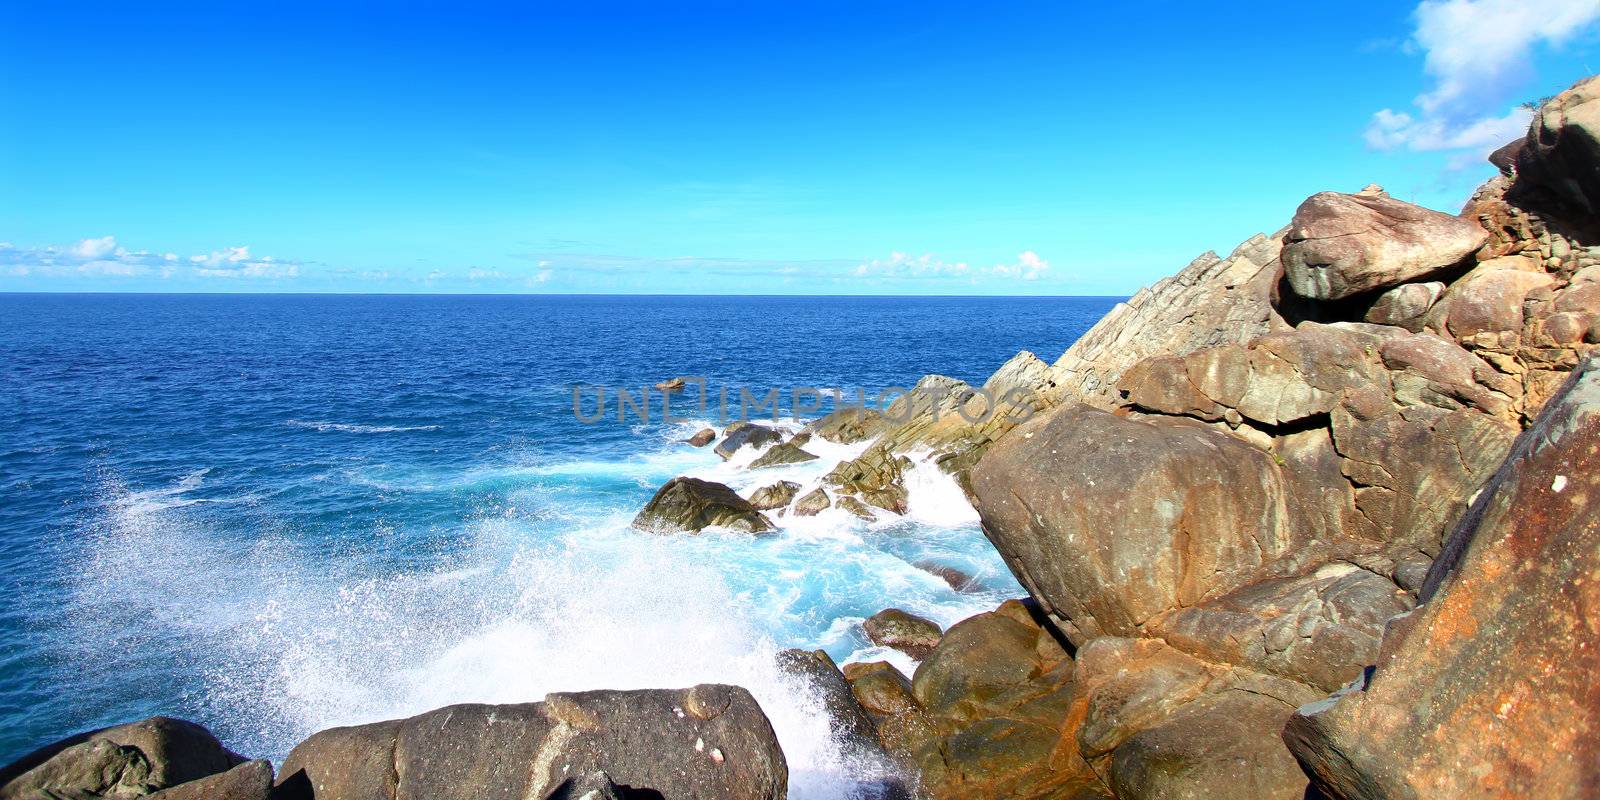 Waves crash over huge boulders at Shark Bay National Park in the British Virgin Islands.